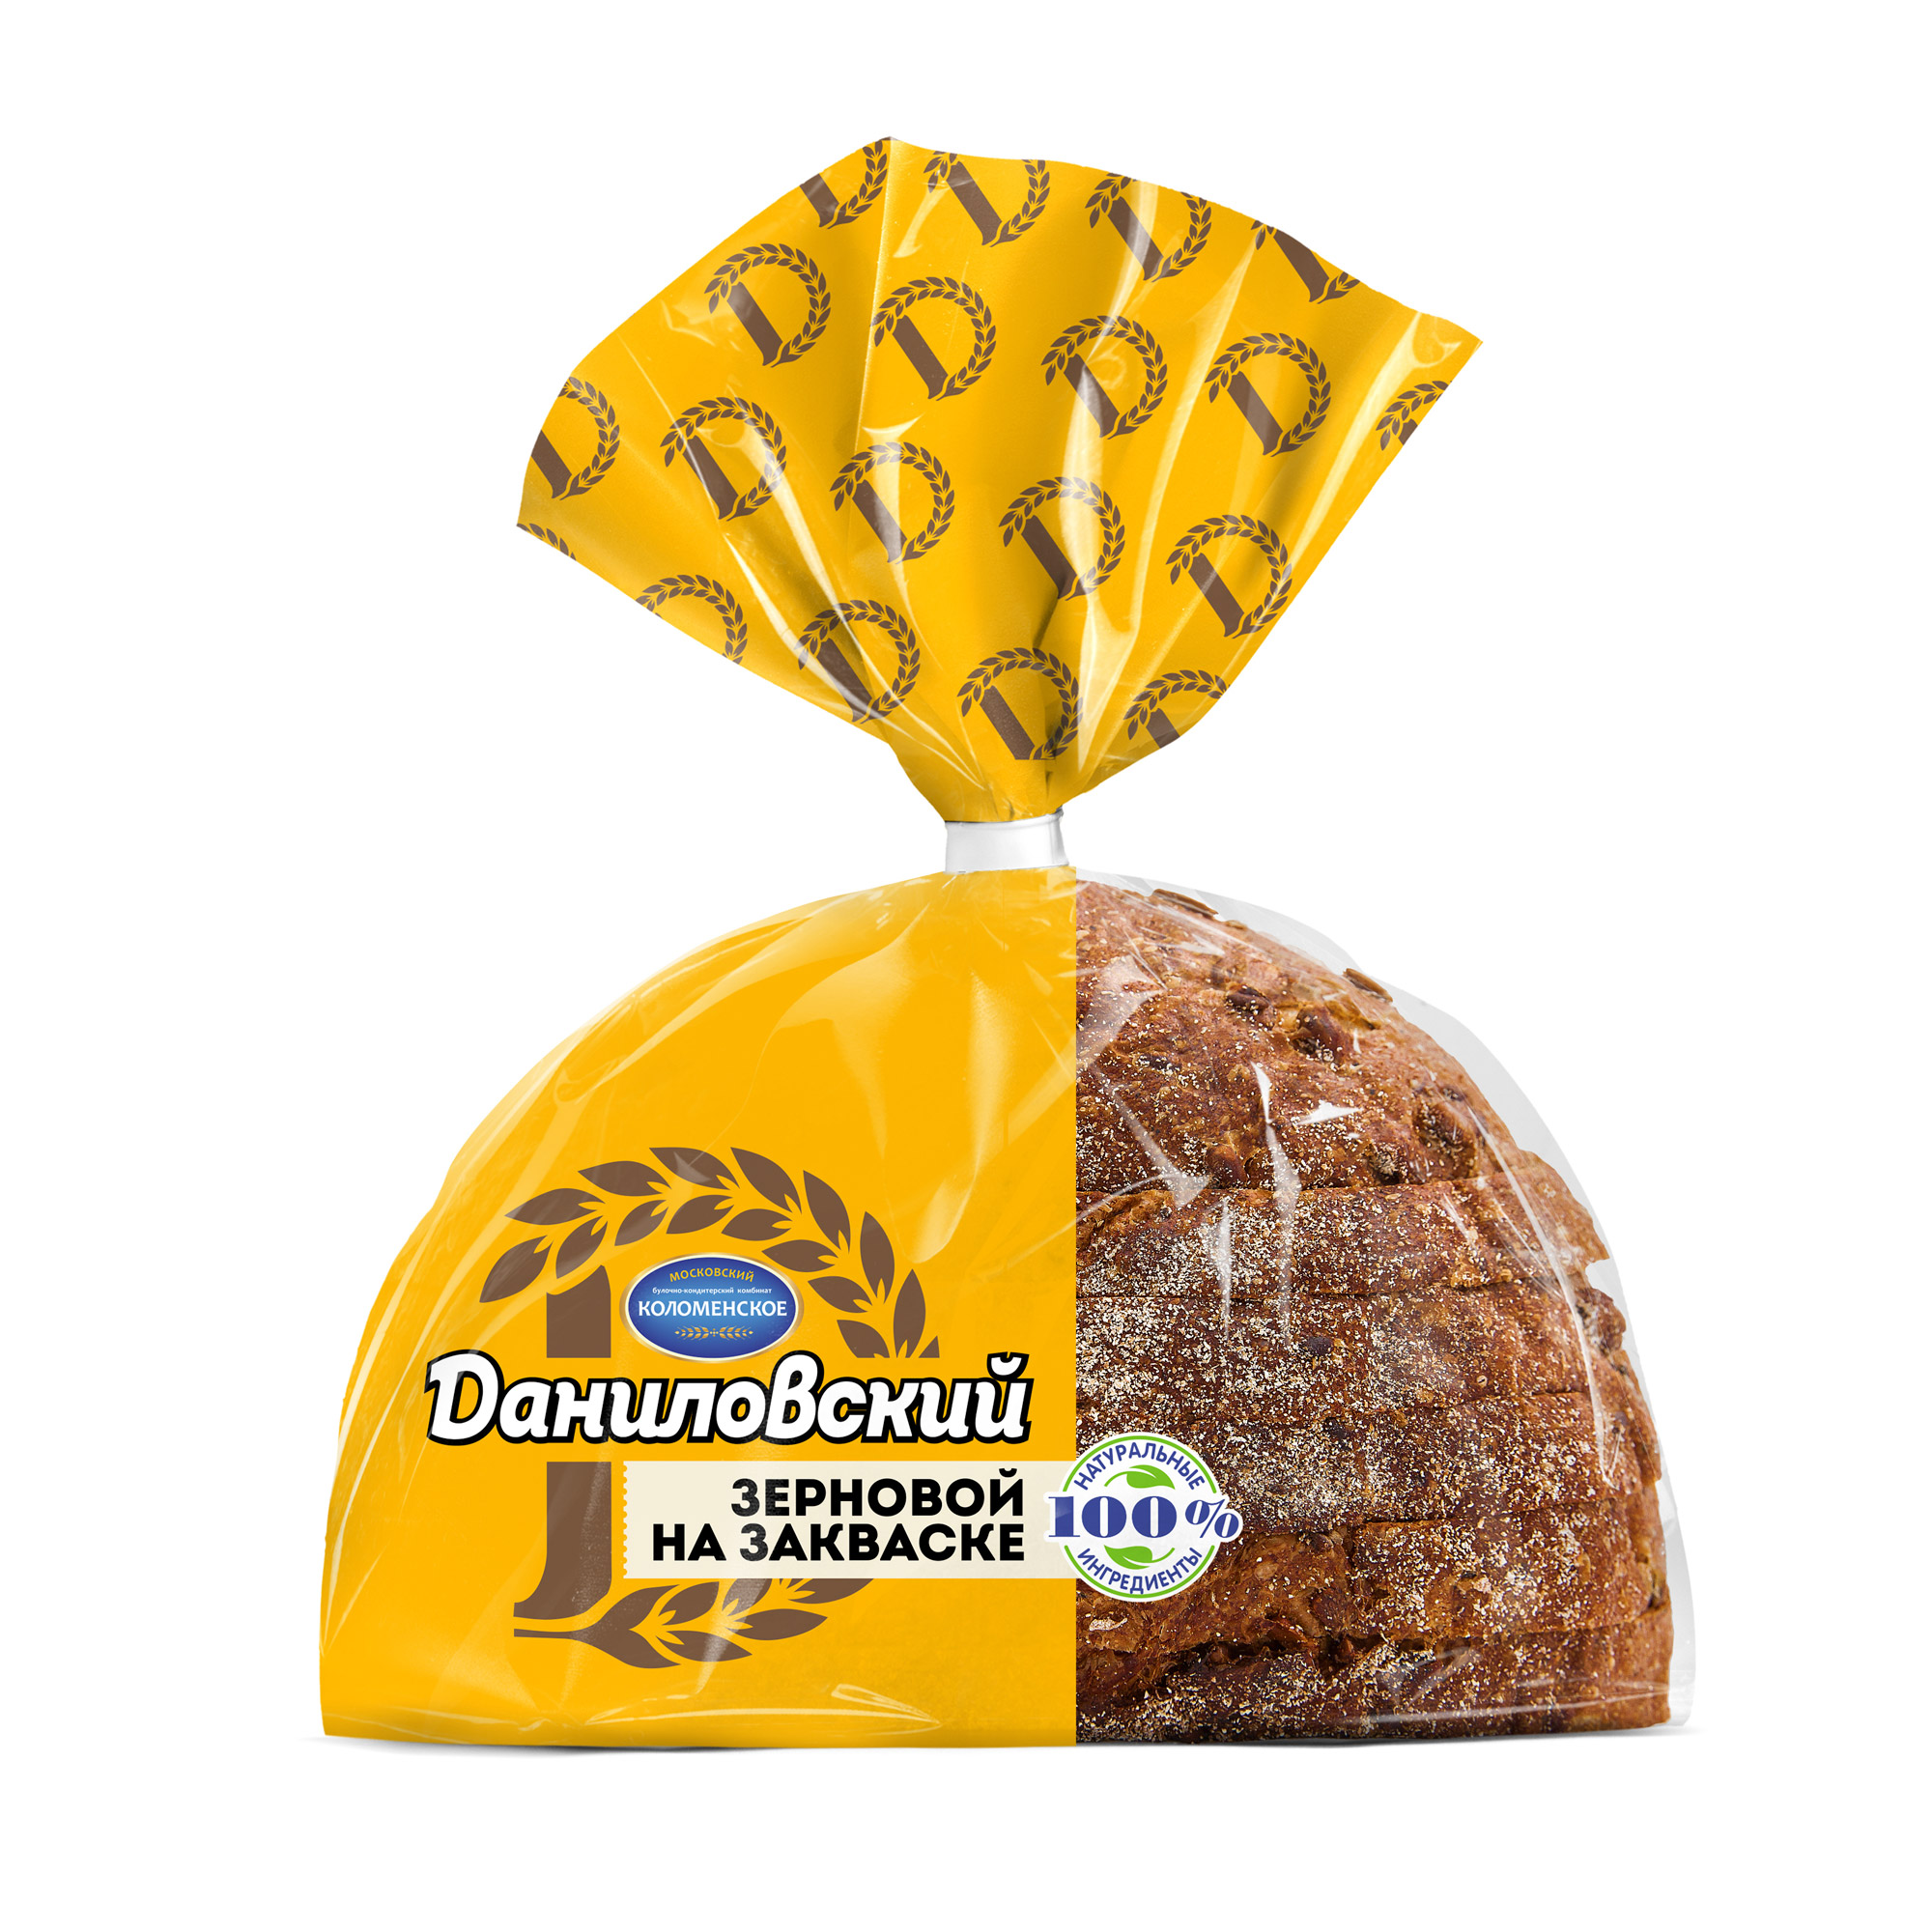 Хлеб Даниловский зерновой в нарезке 300 г хлеб даниловский пшеничный в нарезке 275 г